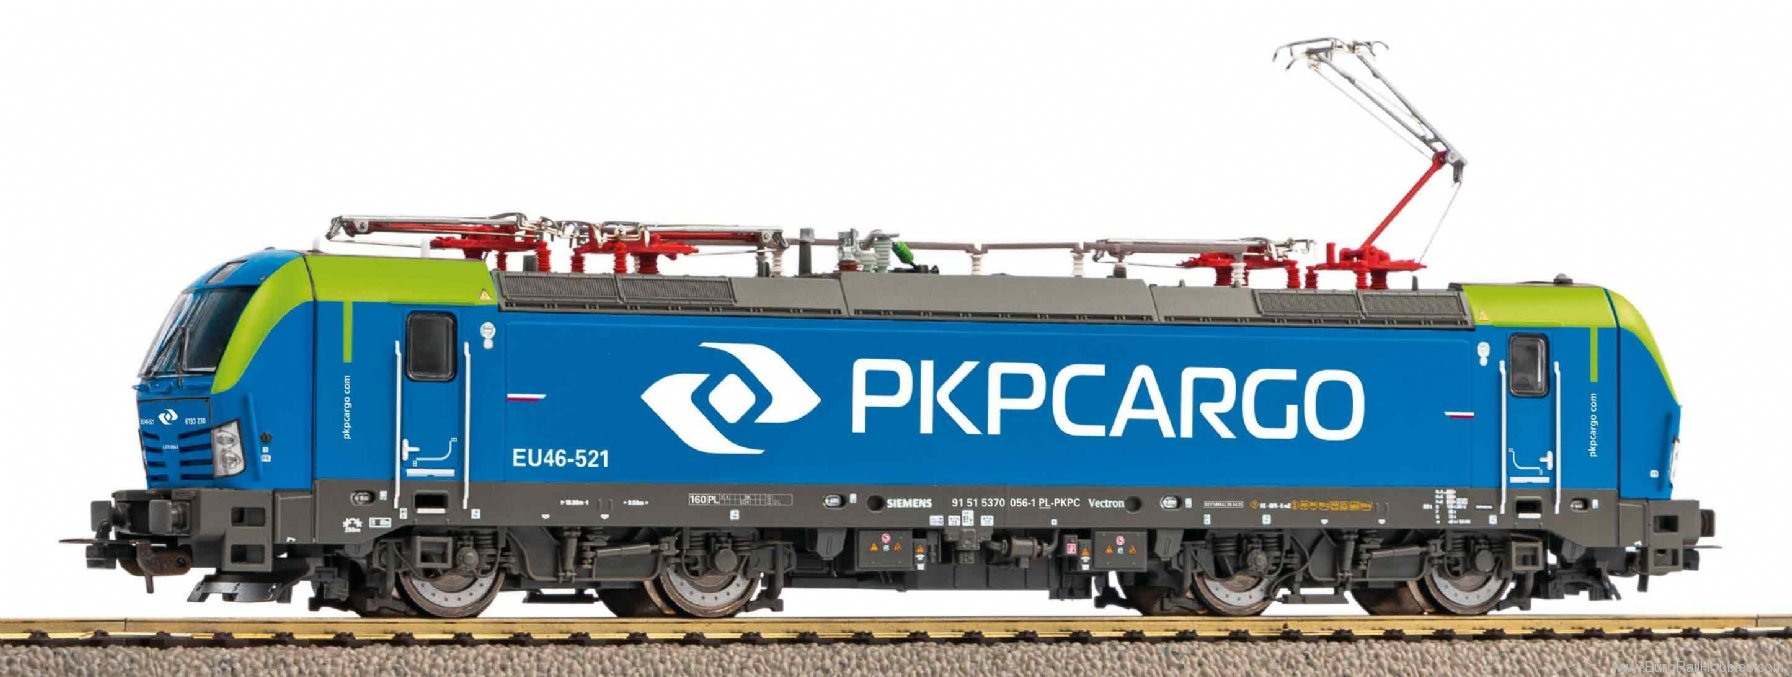 Piko 21650 Electric locomotive Vectron EU46 PKP Cargo VI